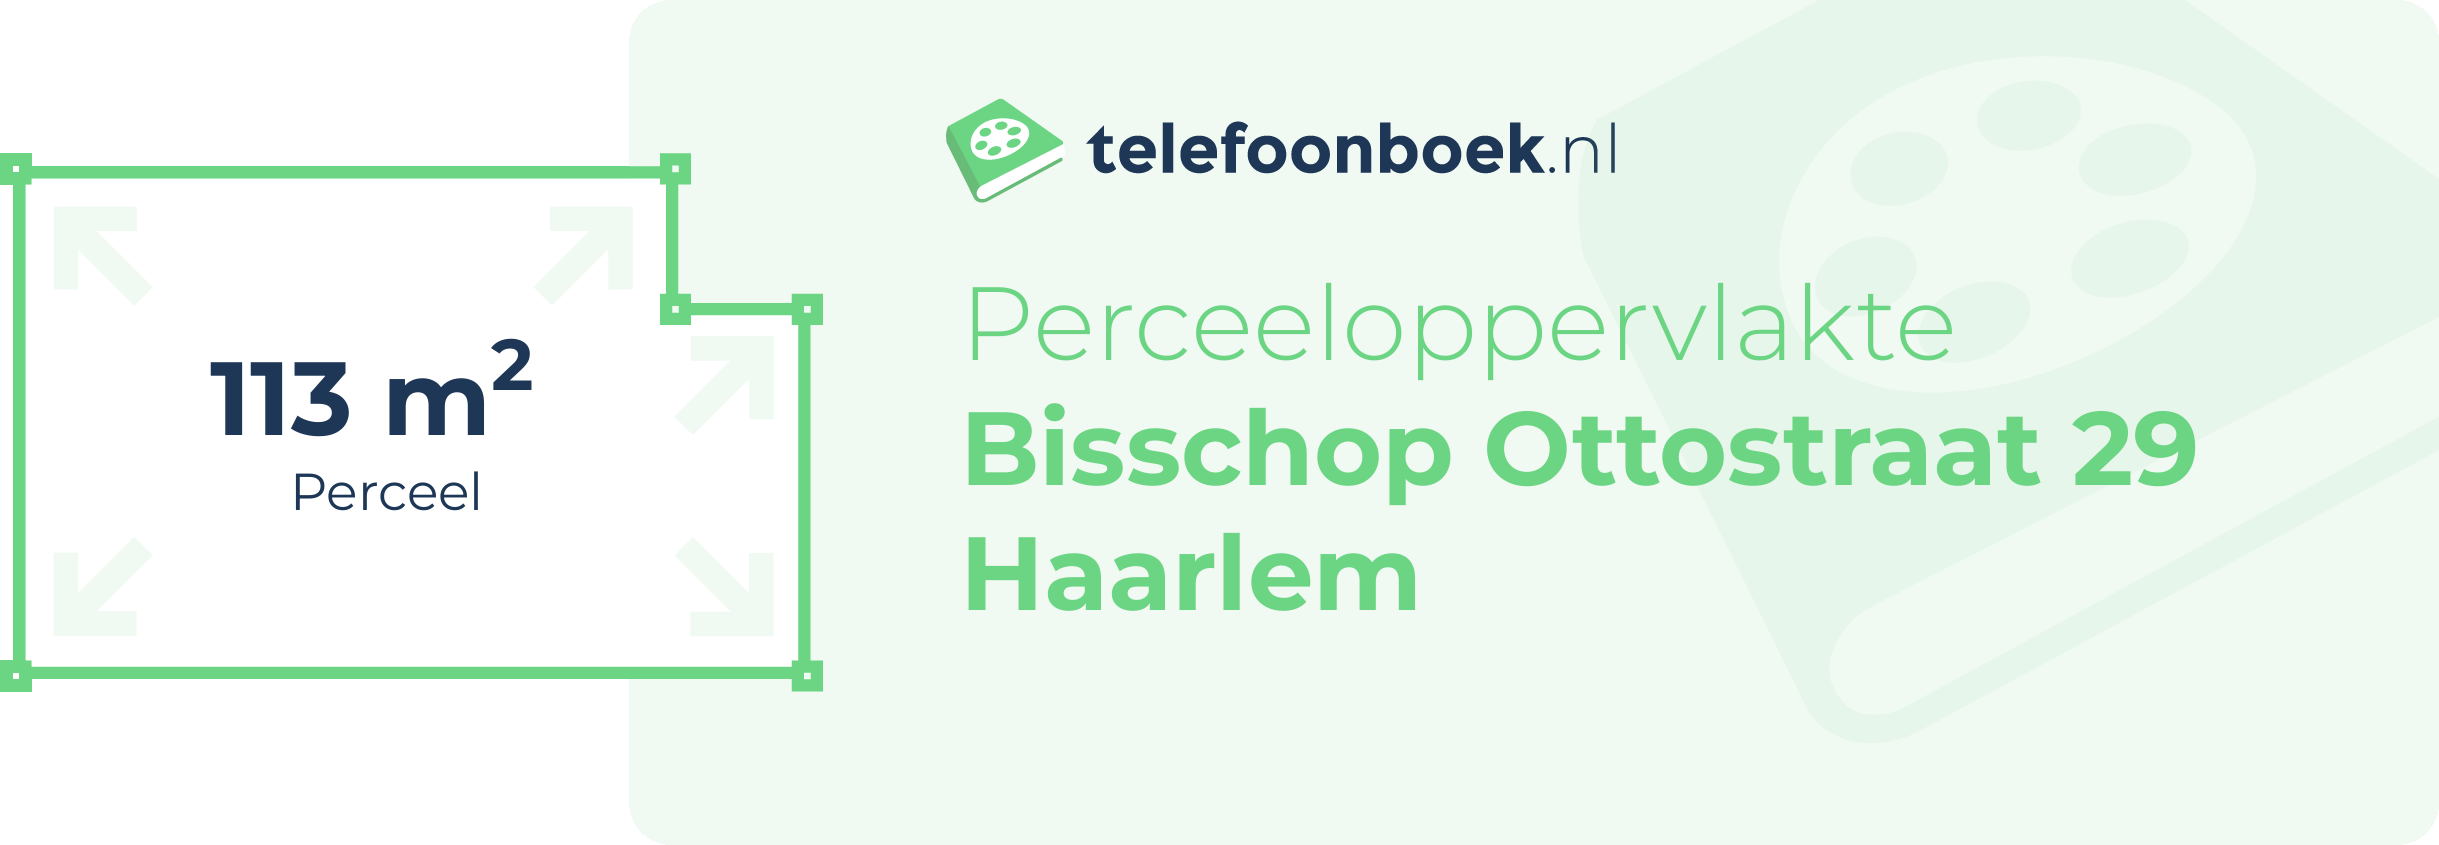 Perceeloppervlakte Bisschop Ottostraat 29 Haarlem